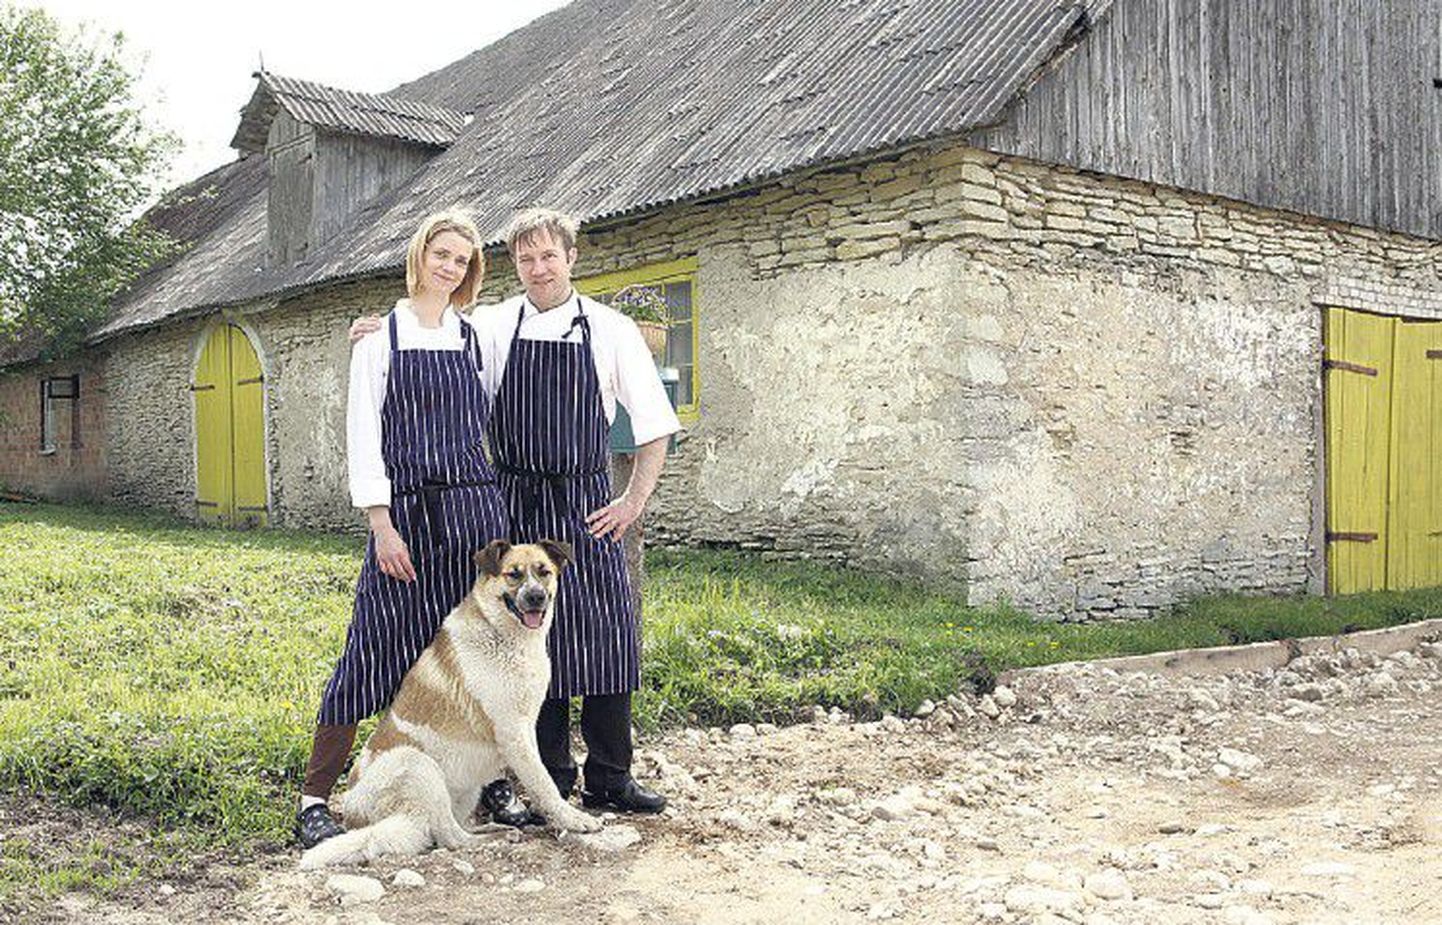 Керту Лукас и Антс Уусталу вместе с псом Квенеллом наслаждаются жизнью на своем хуторе, на котором еще многое предстоит привести в порядок.